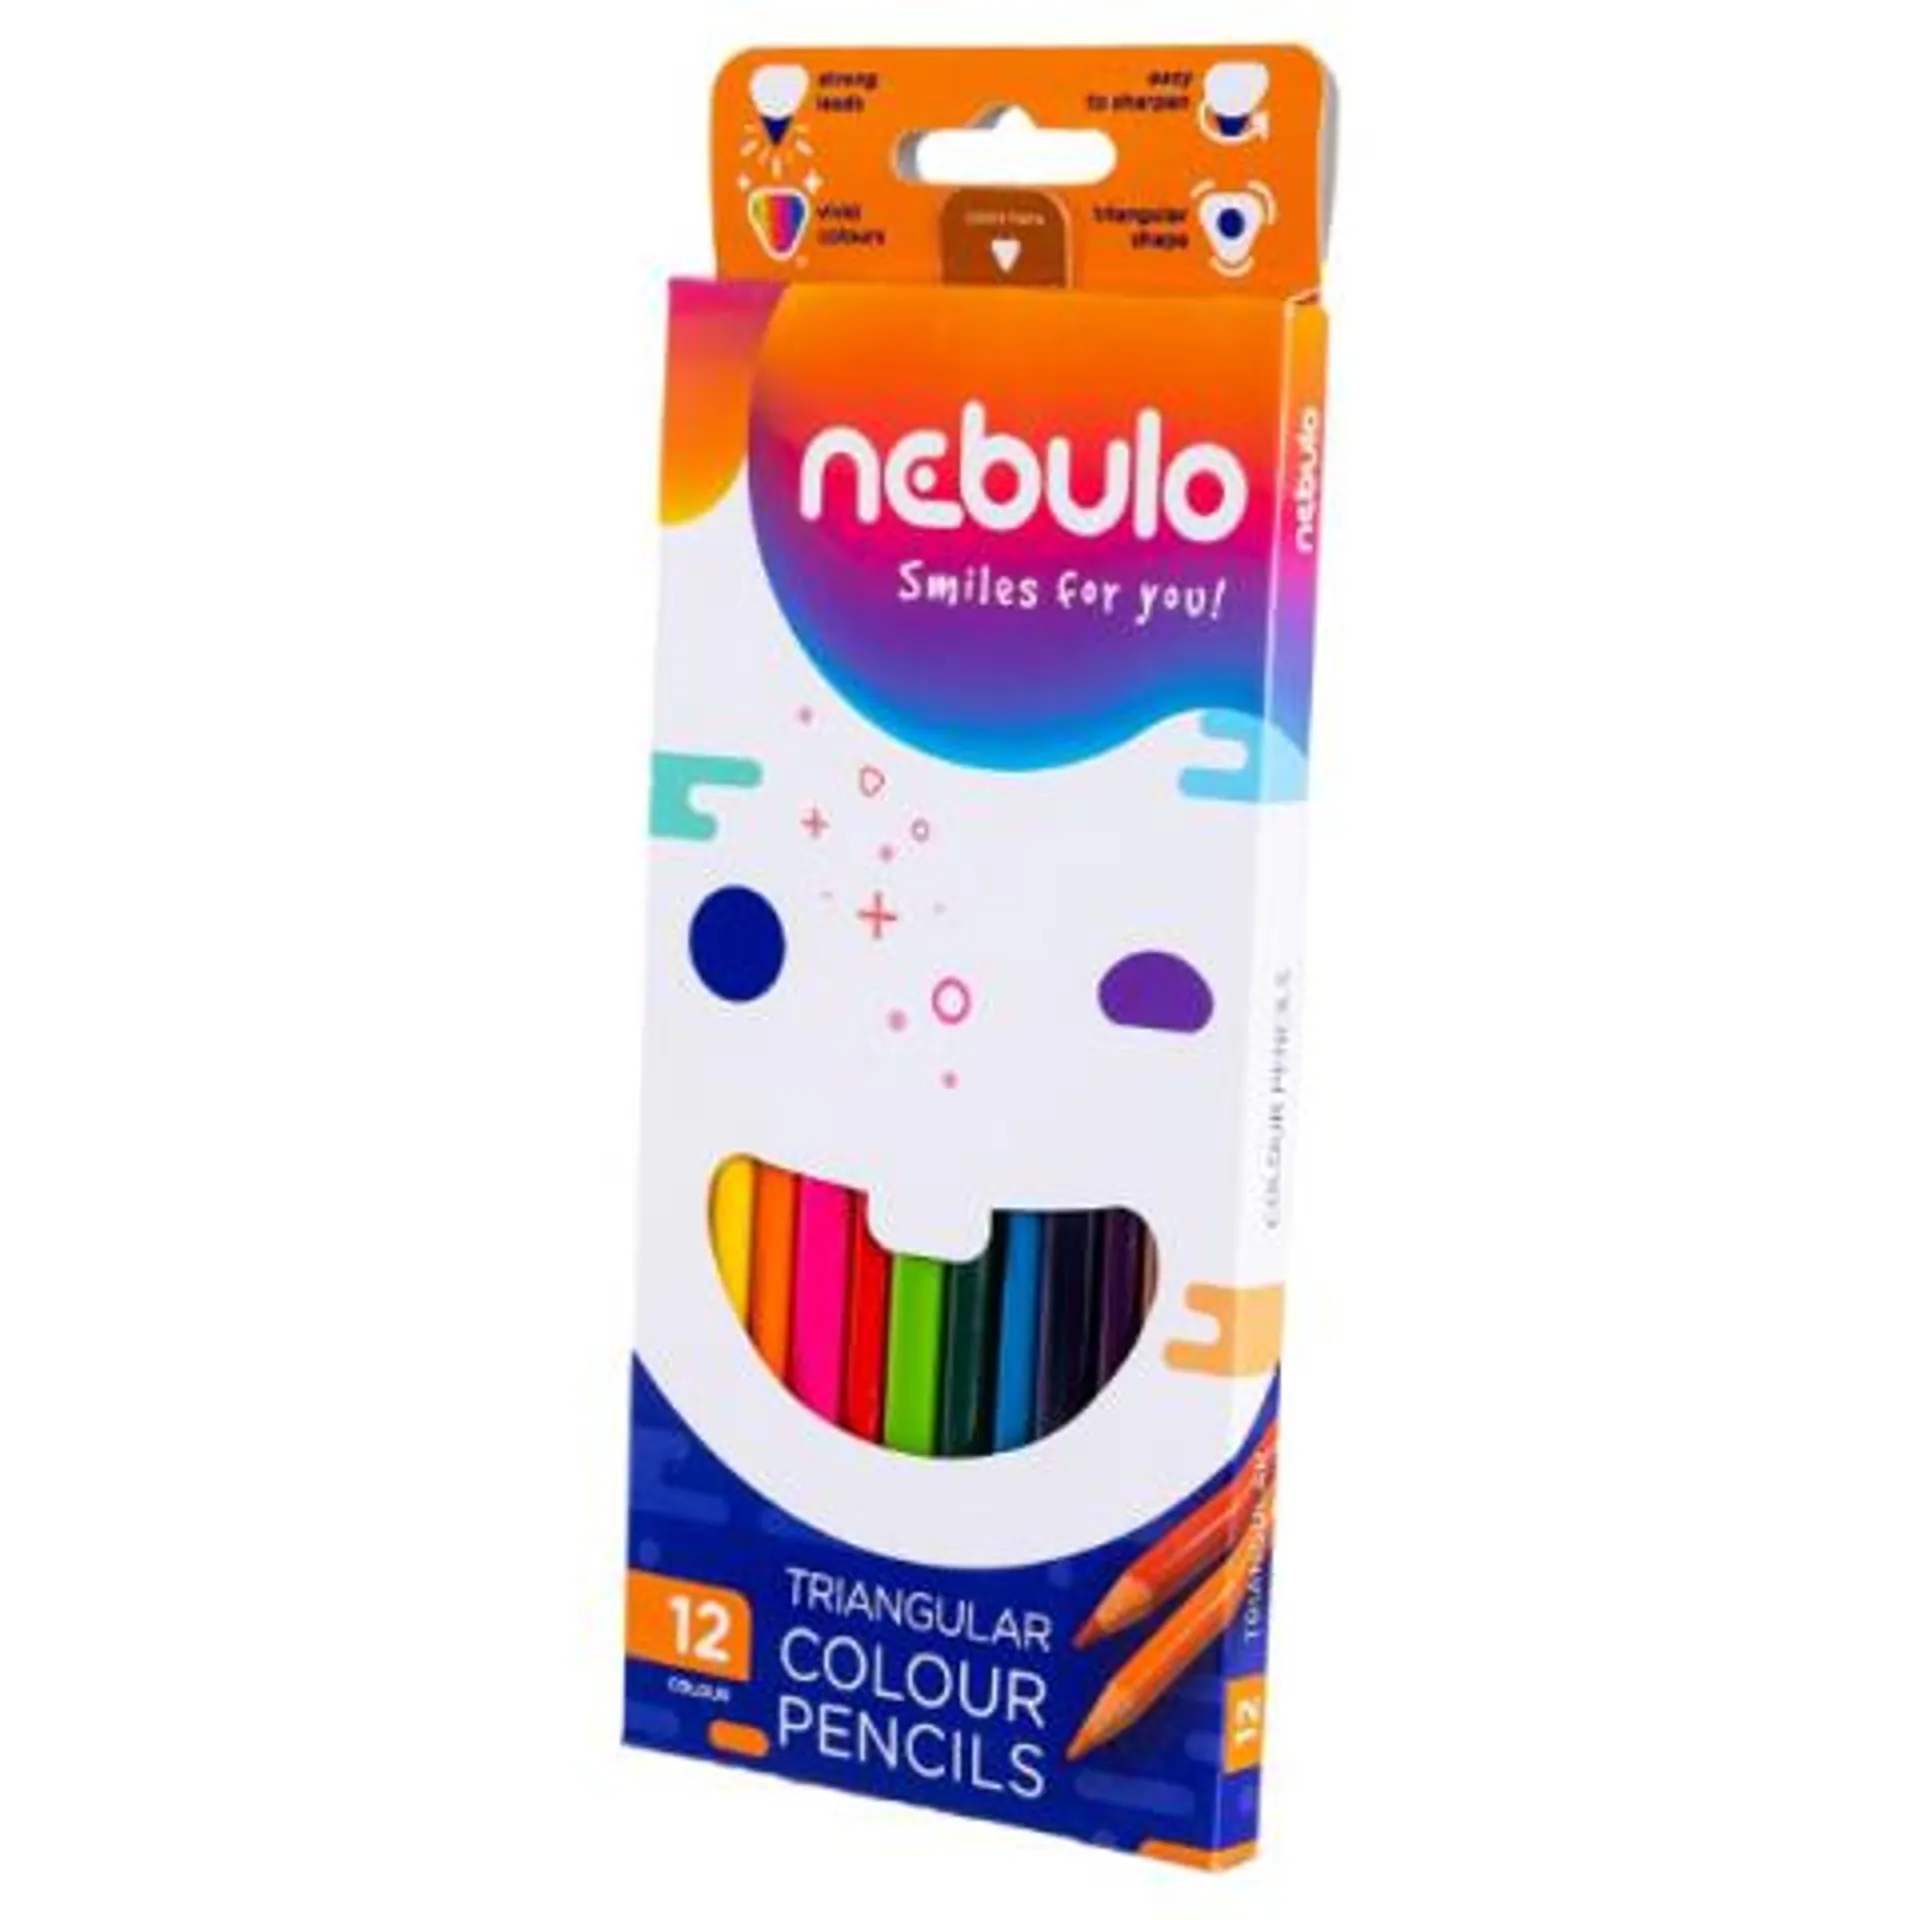 Nebulo: Háromszög alakú 12db-os színes ceruza szett